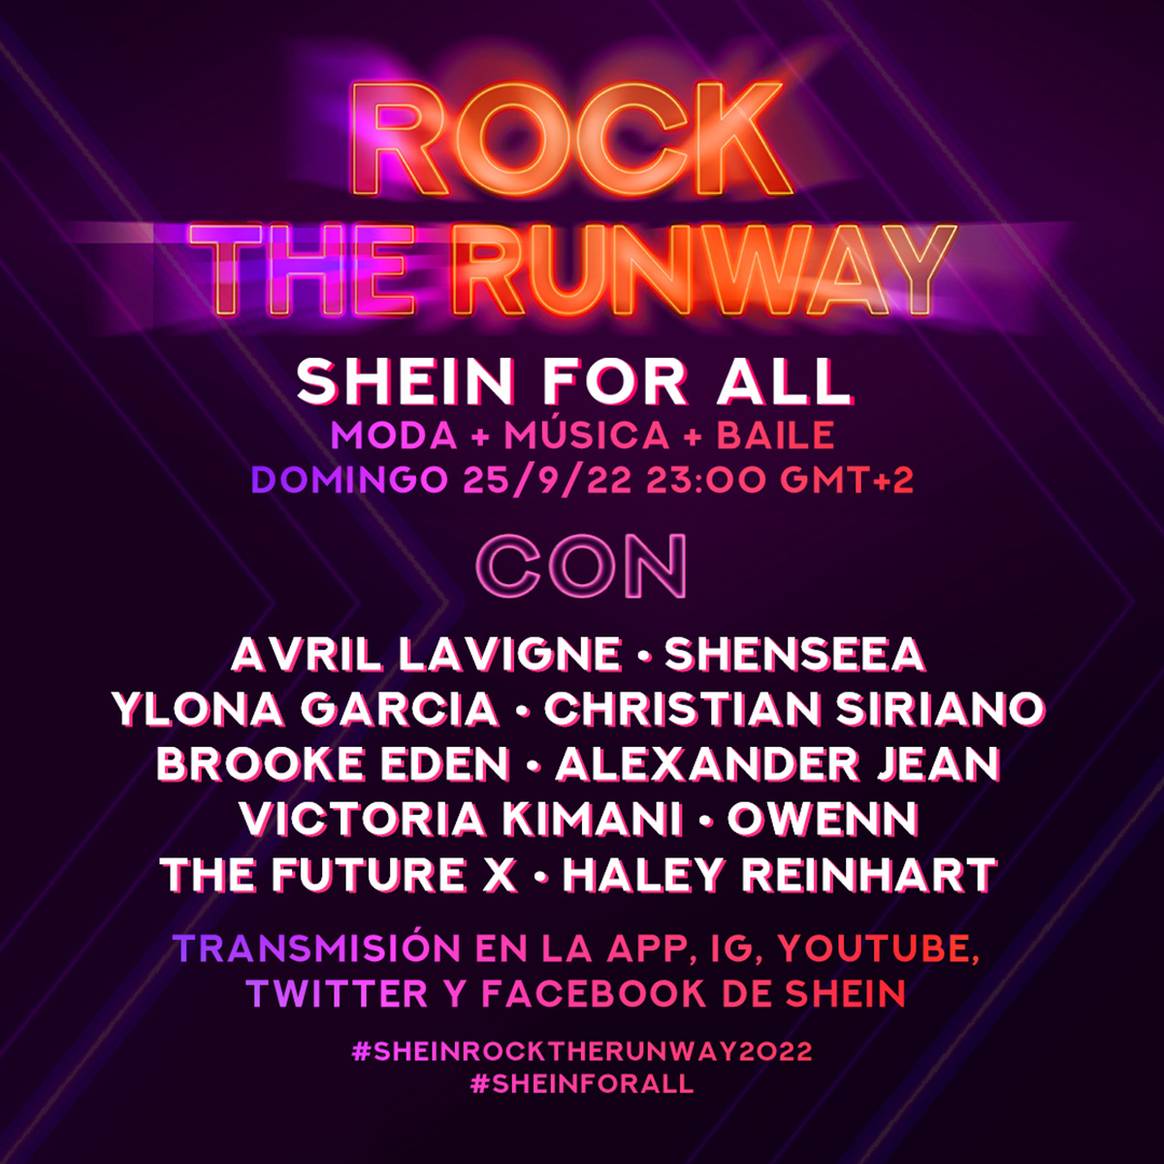 Photo Credits: Cartel promocional del evento “Rock The Runway” de Shein. Shein, página oficial de Facebook.